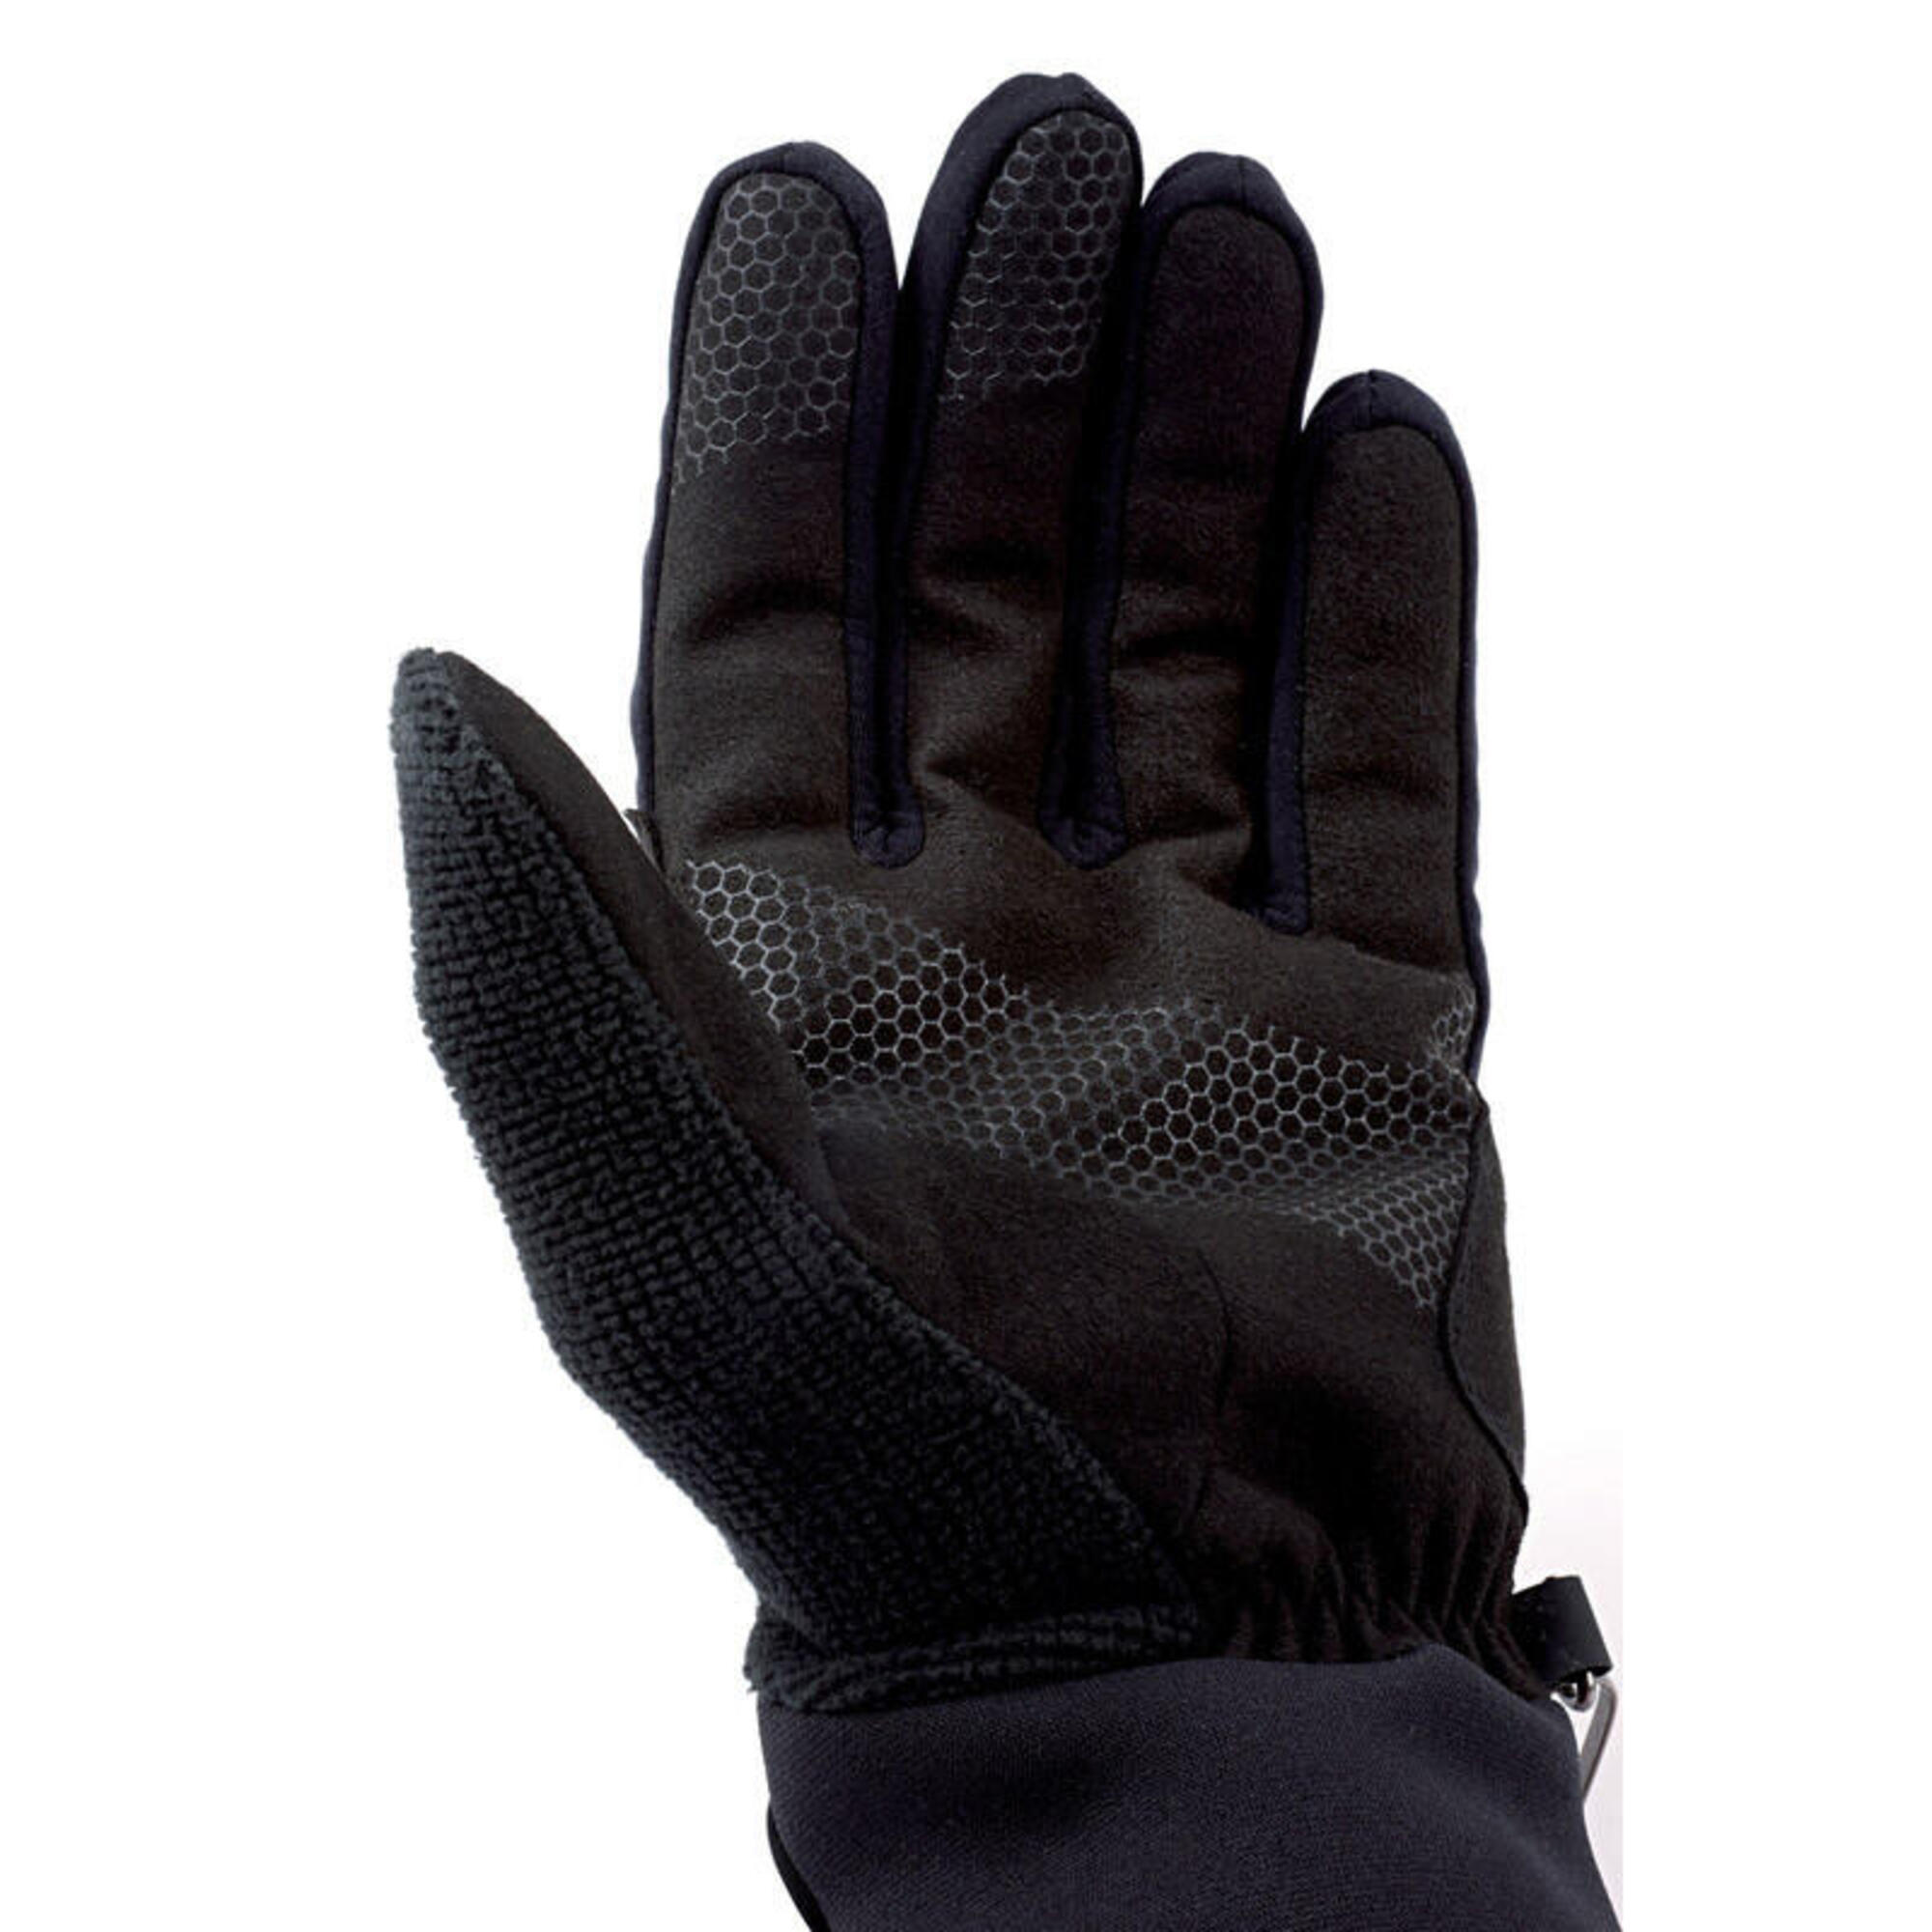 Guanti sottili e traspiranti per gli sport invernali - Nordic Exploration Gloves